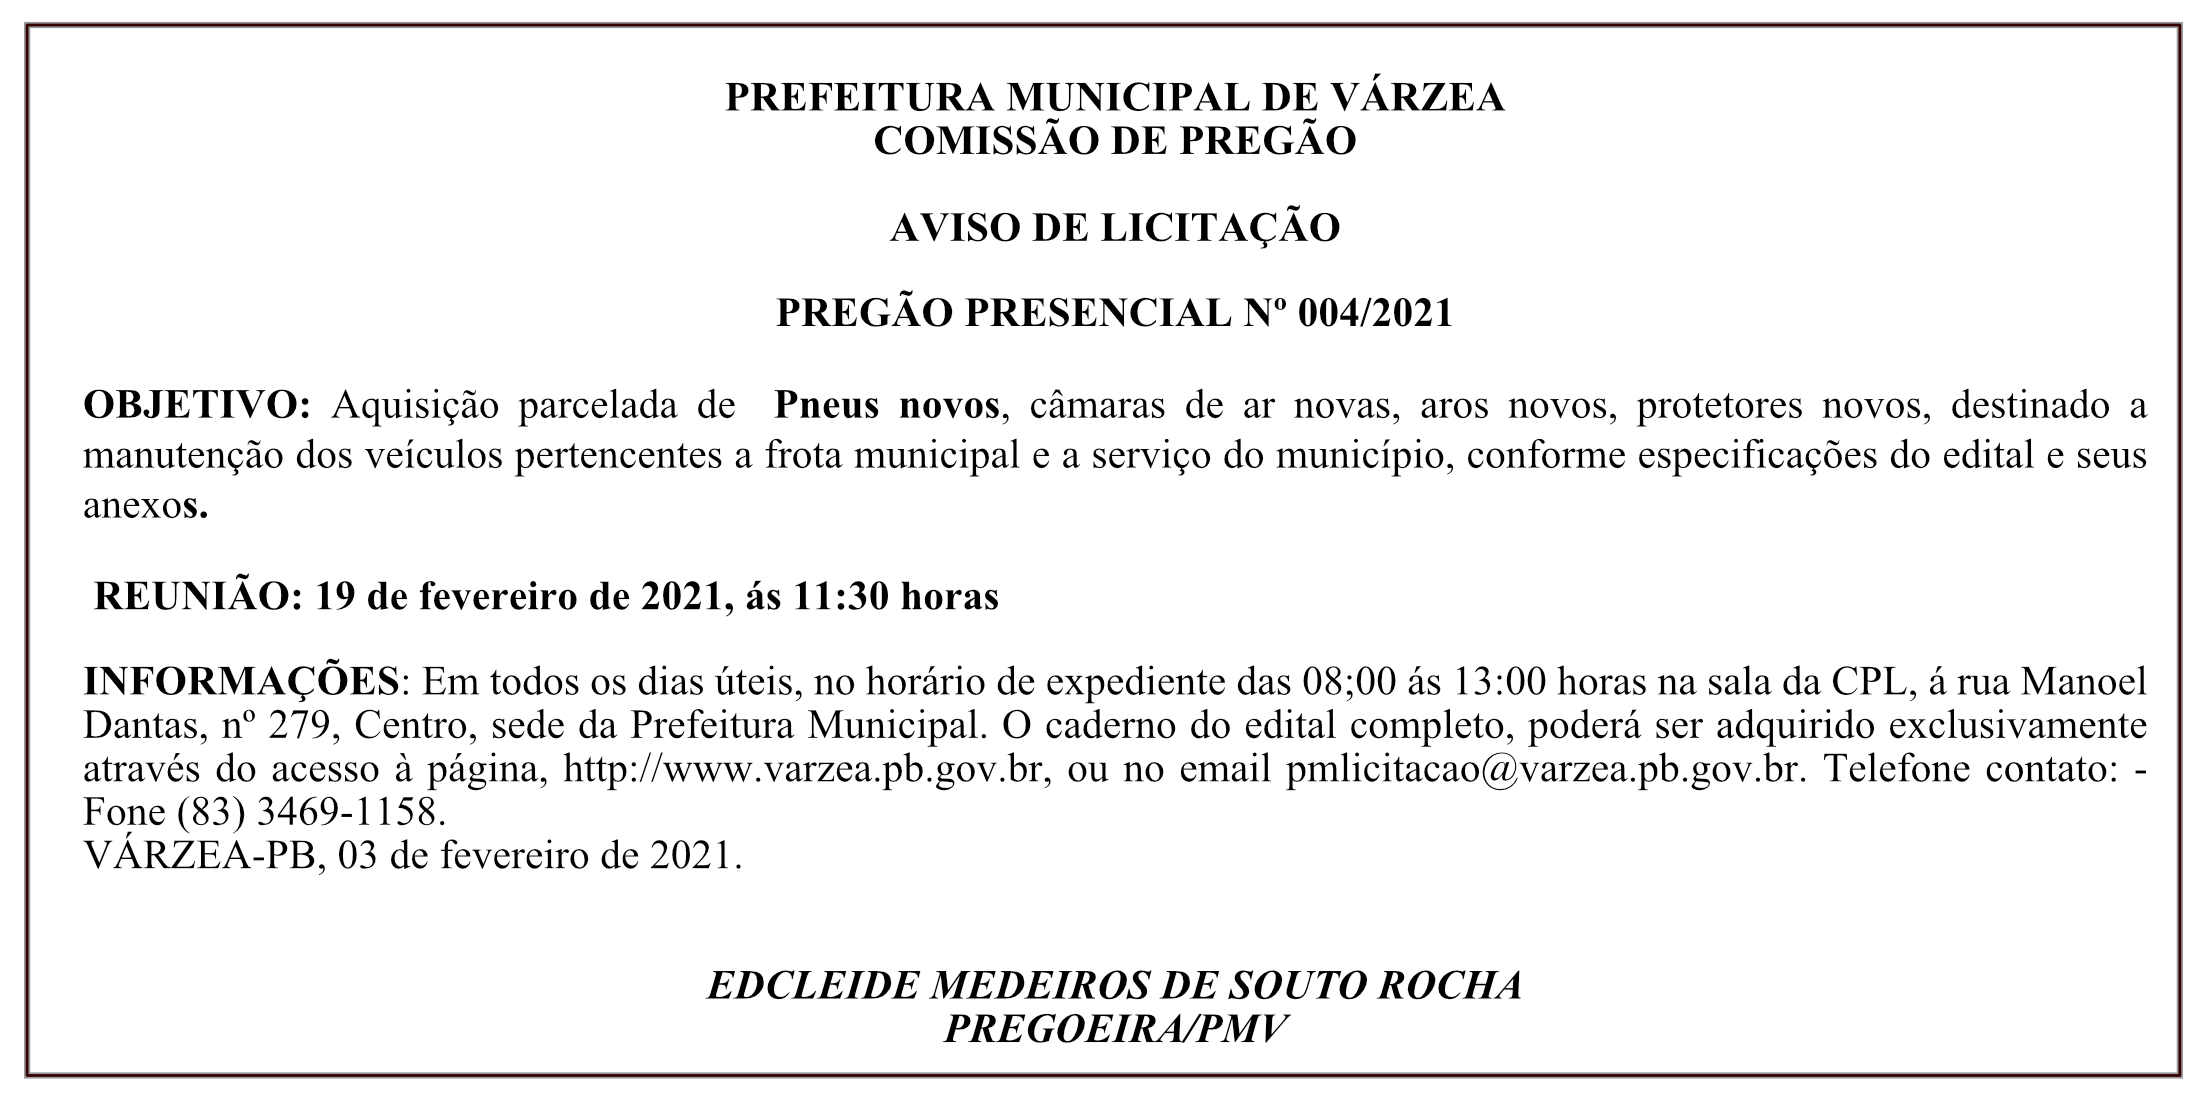 PREFEITURA MUNICIPAL DE VÁRZEA – AVISO DE LICITAÇÃO – PREGÃO PRESENCIAL Nº 004/2021